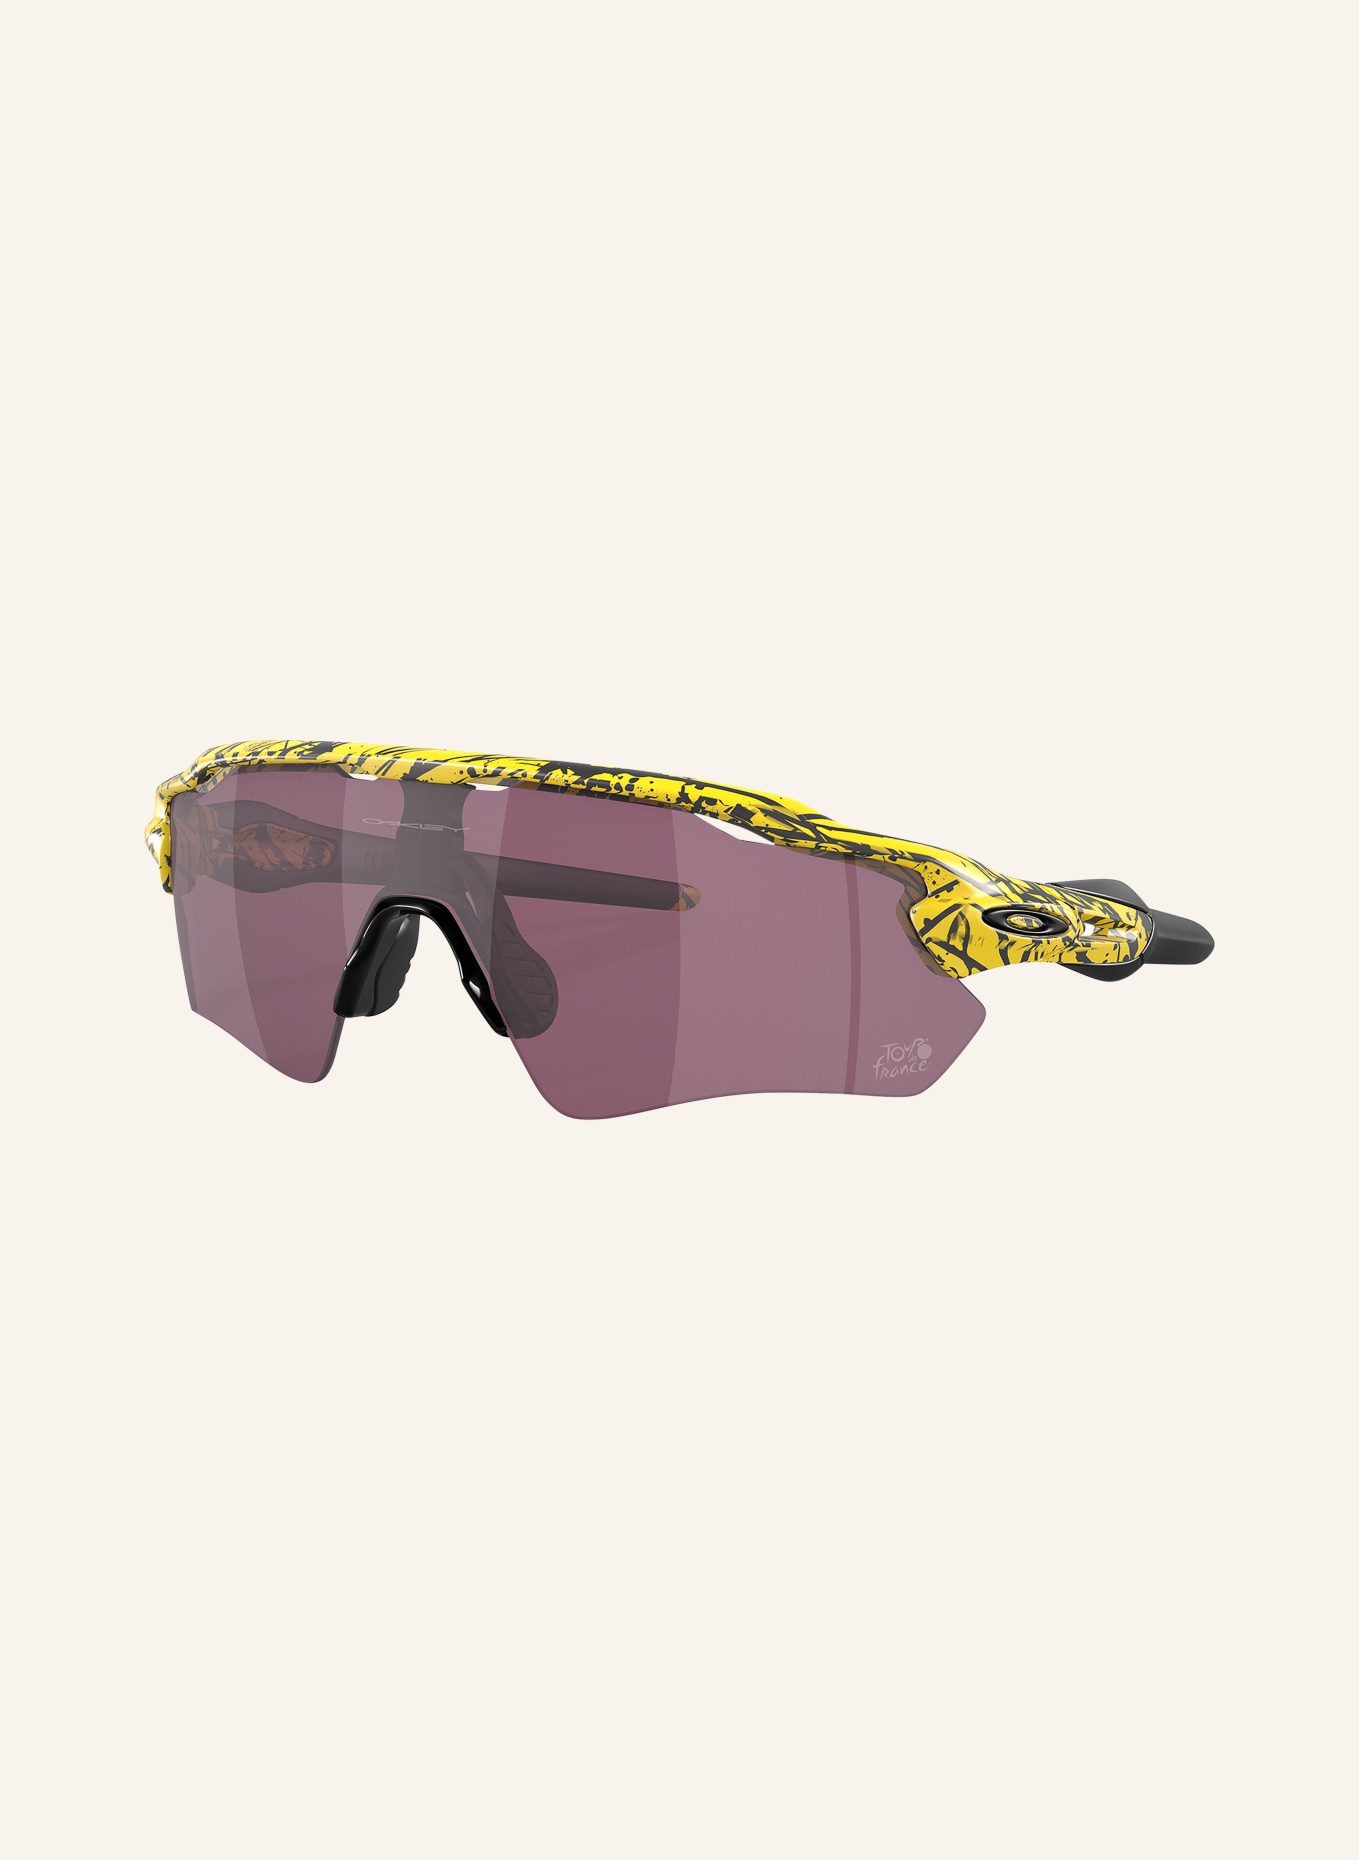 OAKLEY Multisport sunglasses RADAR® EV PATH®, Color: 9208E8 YELLOW/BLACK/PURPLE MIRRORED (Image 1)